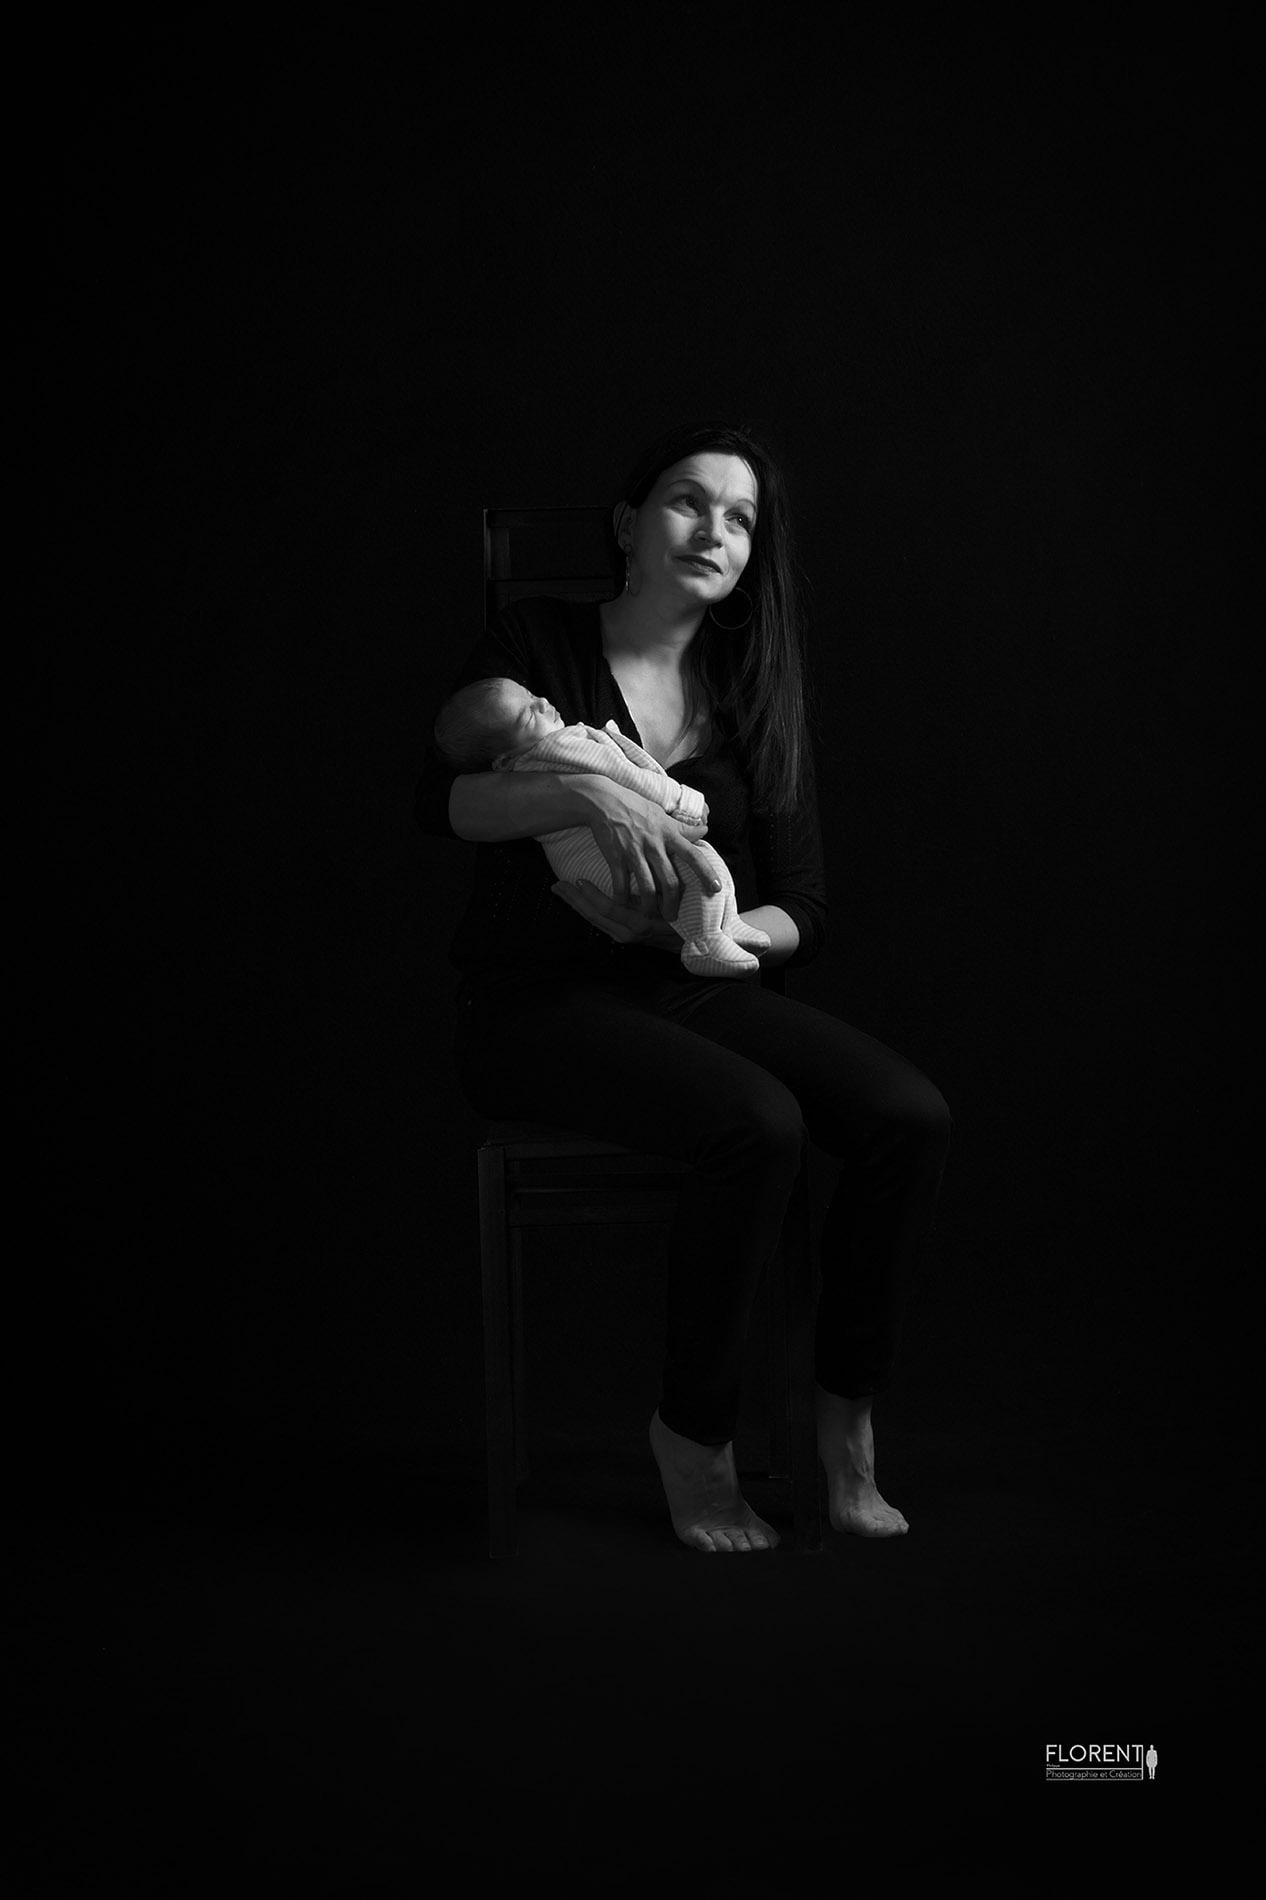 superbe portrait en noir et blanc de bébé dans les bras de maman en studio florent photographe boulogne sur mer lille le touquet paris amiens